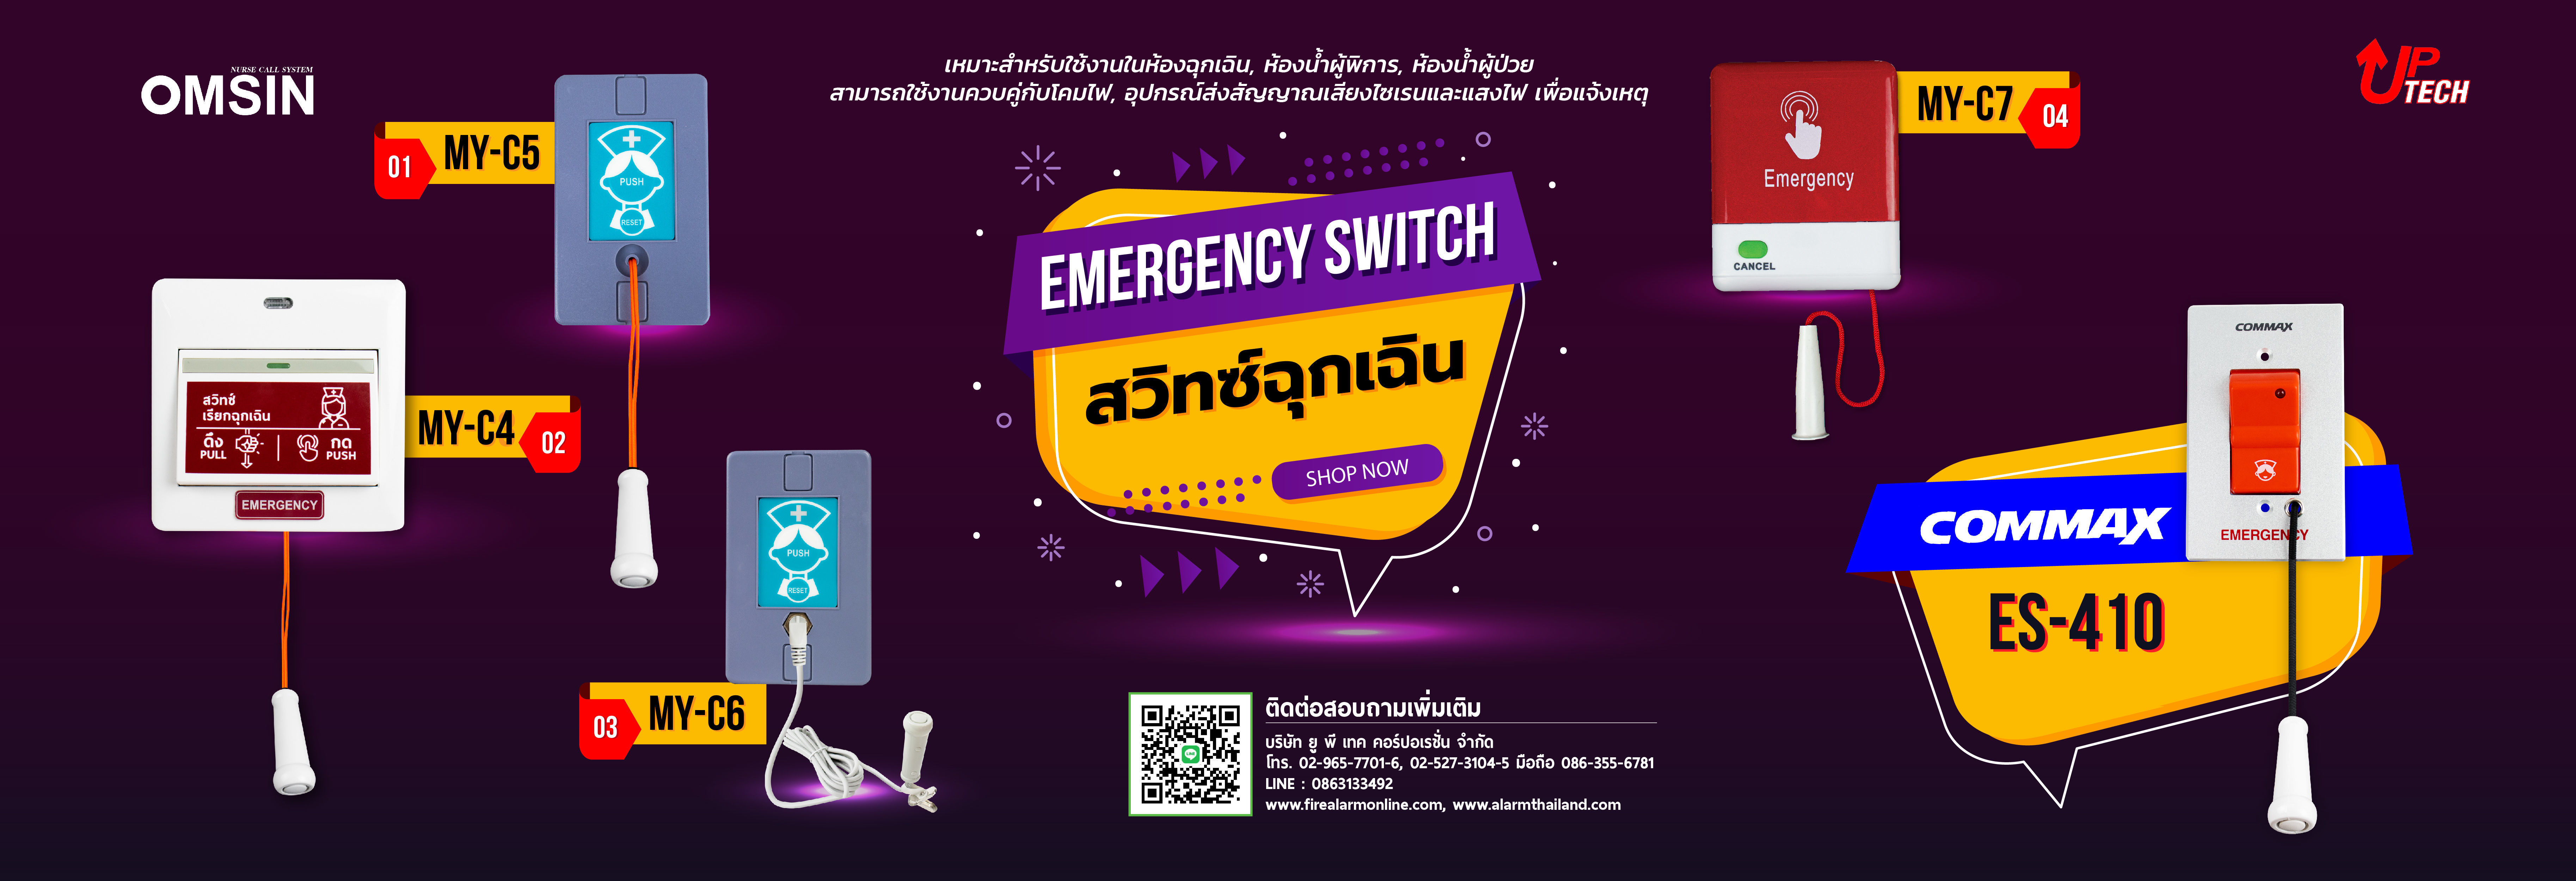 Emergency Switch (สวิทซ์ฉุกเฉิน))